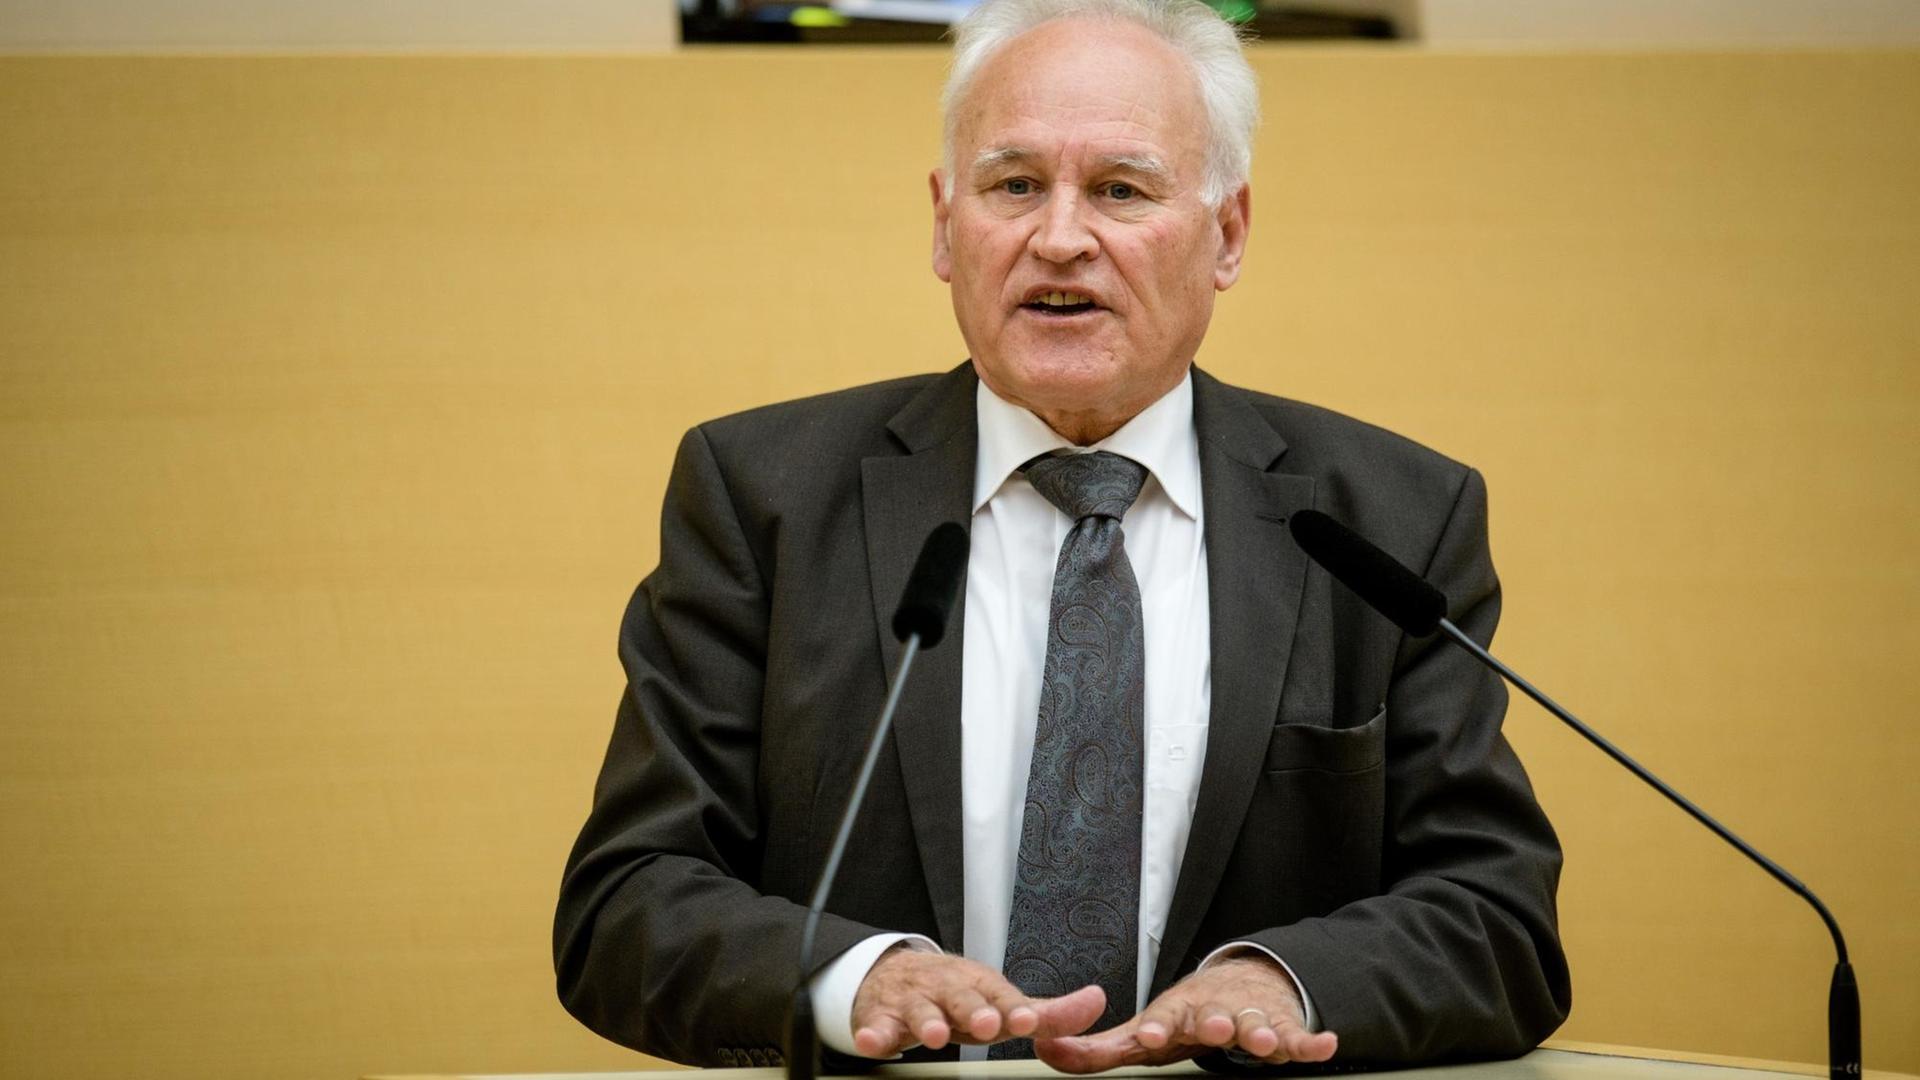 Der frühere CSU-Chef Erwin Huber (CSU) spricht am 09.11.2017 während einer Landtagssitzung im Plenarsaal vom Maximilianeum in München.